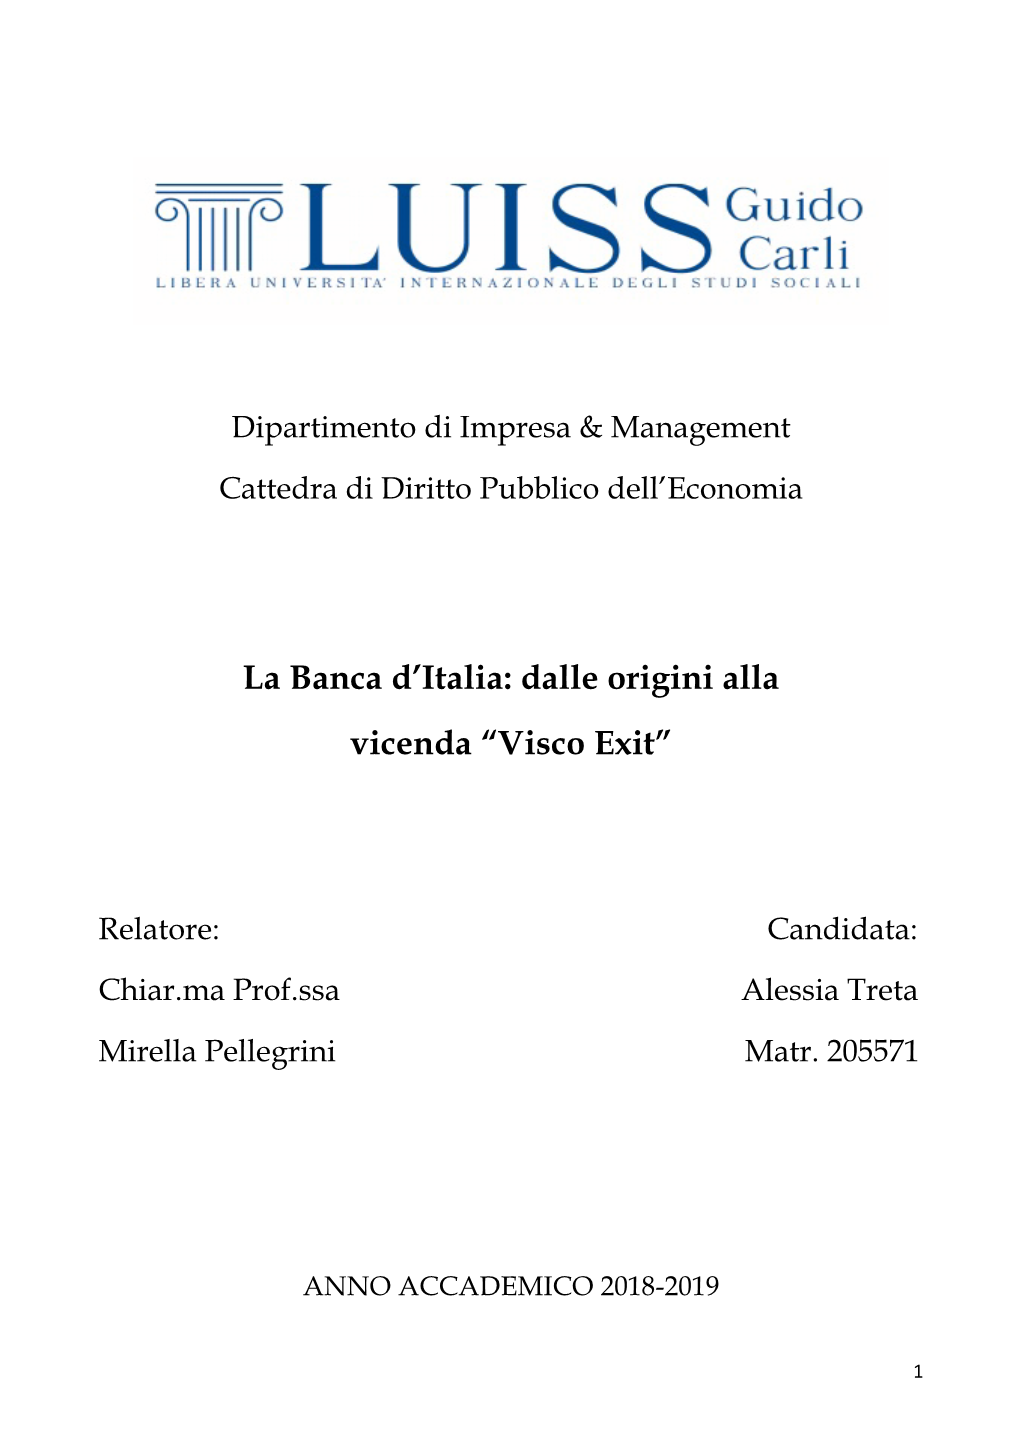 La Banca D'italia: Dalle Origini Alla Vicenda “Visco Exit”